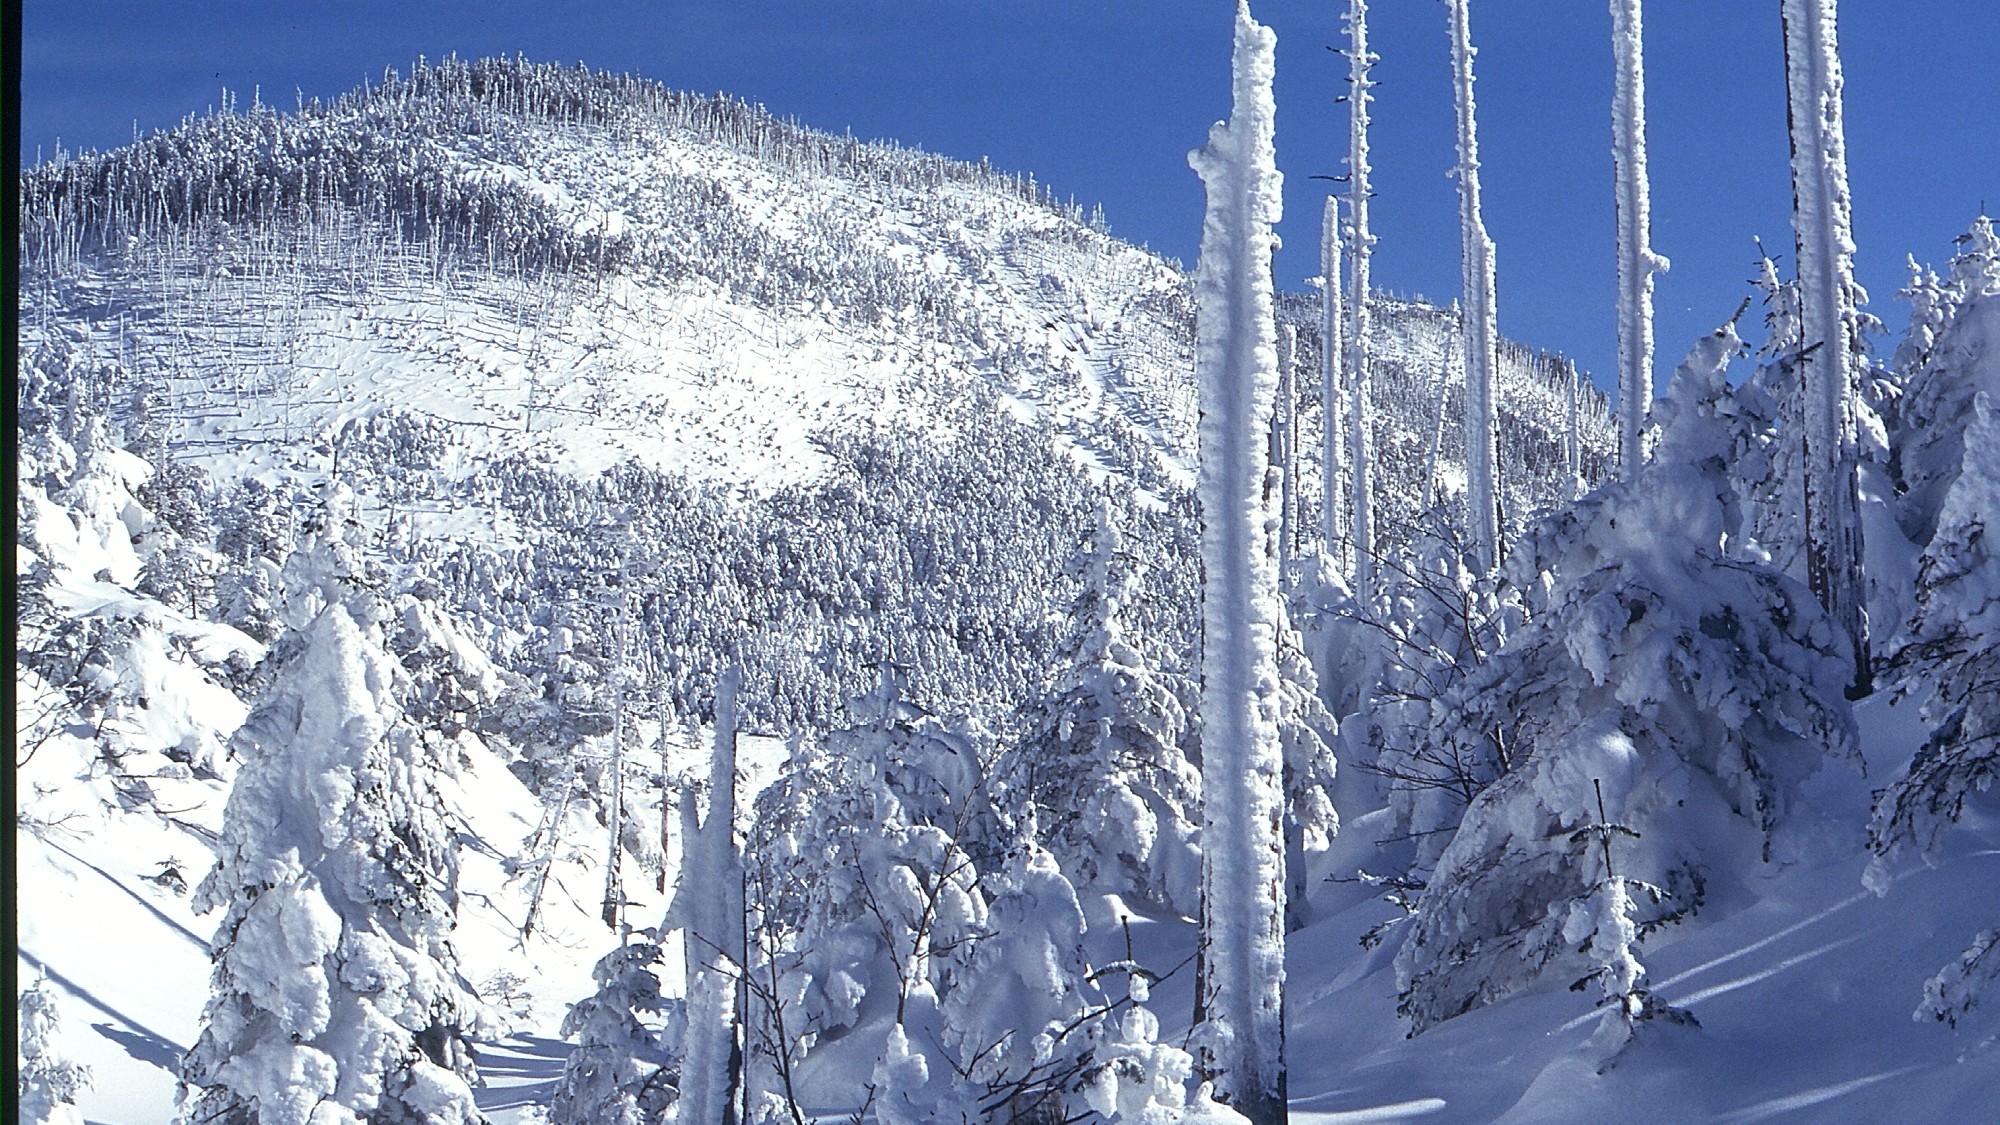 ピラタス蓼科スノーリゾート◆ロープウェイで一気に標高2,240mへ登ると、山頂に樹氷が広がります